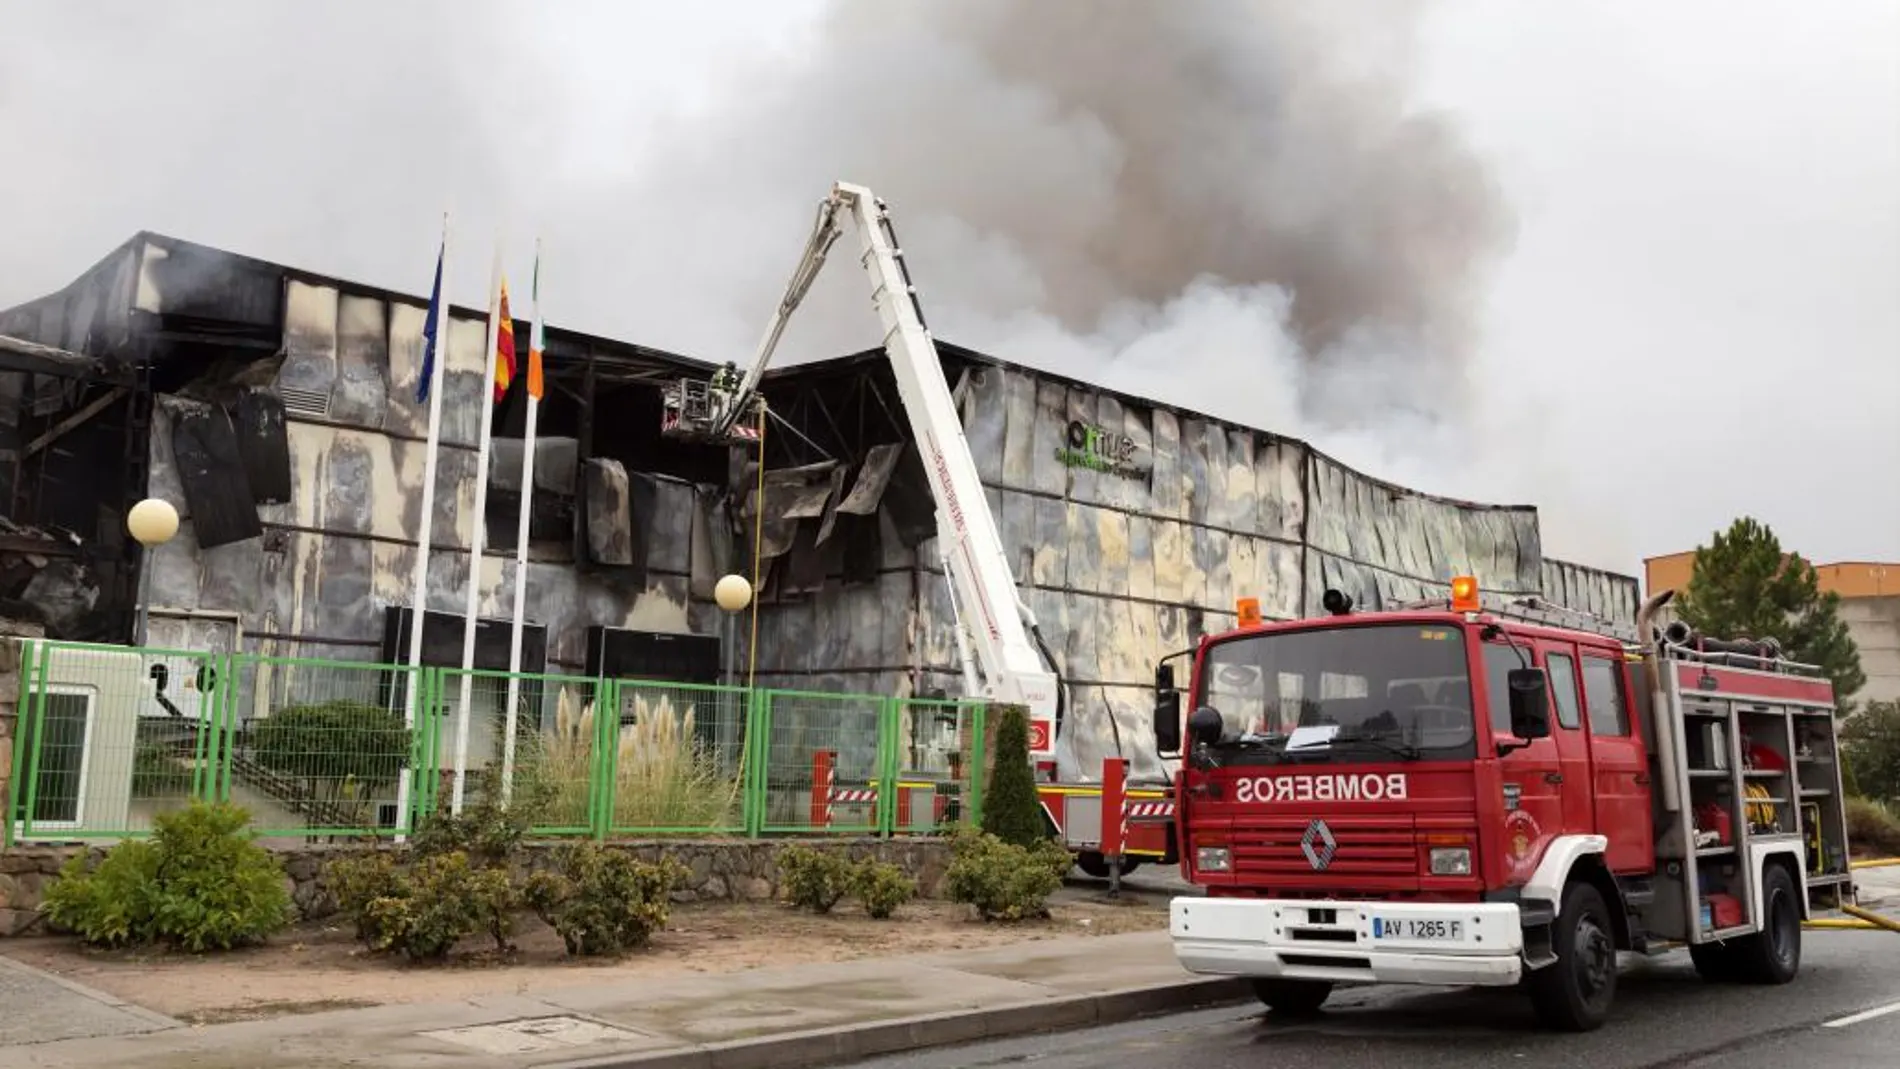 La fábrica que la empresa de capital irlandés Ornua tiene en el Polígono Industrial de Vicolozano, a unos 5 kilómetros de Ávila, ha quedado esta madrugada destruida por las llamas de un virulento incendio